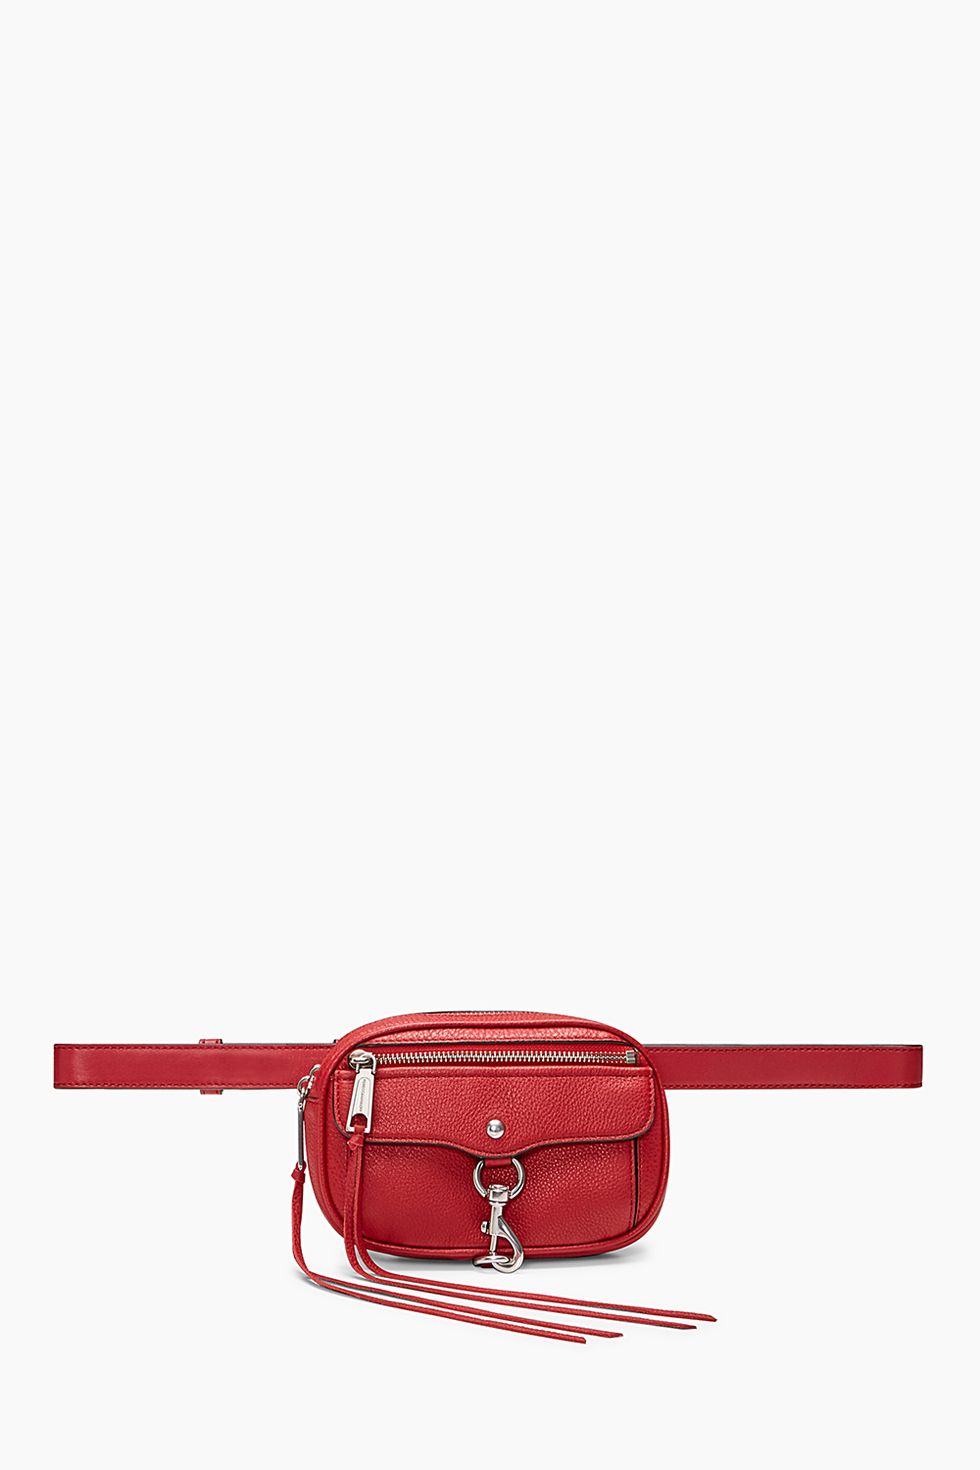 Red, Bag, Handbag, Leather, Fashion accessory, Magenta, Shoulder bag, 